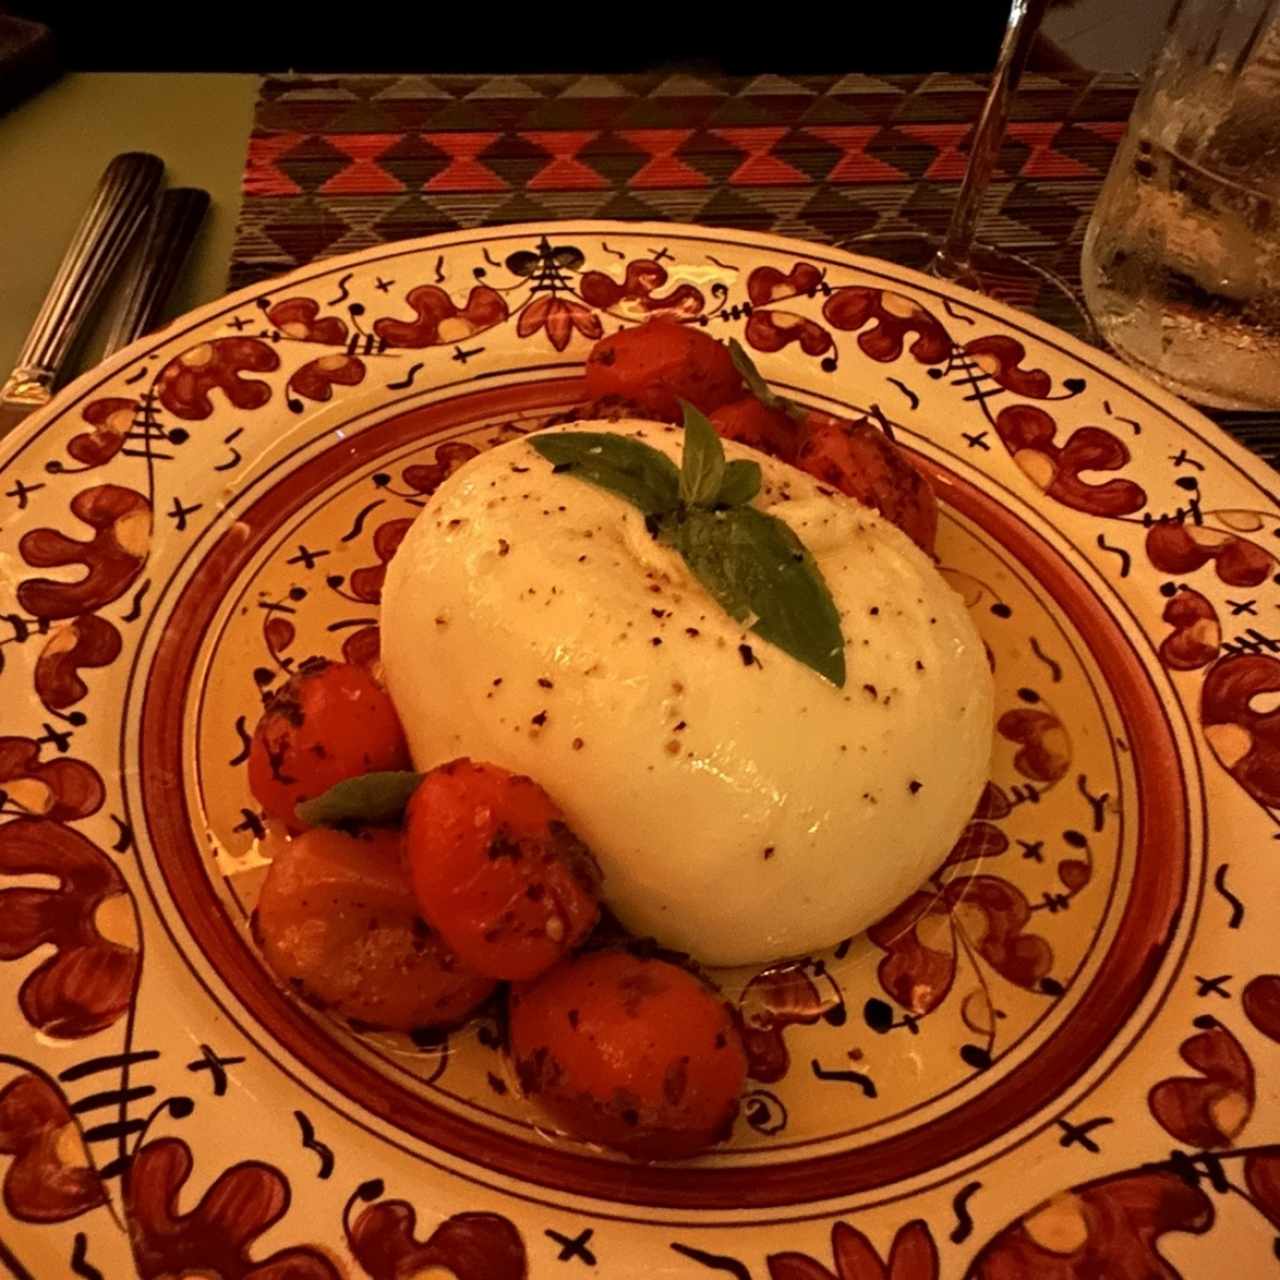 Burrata di Puglia DOP (200grs)